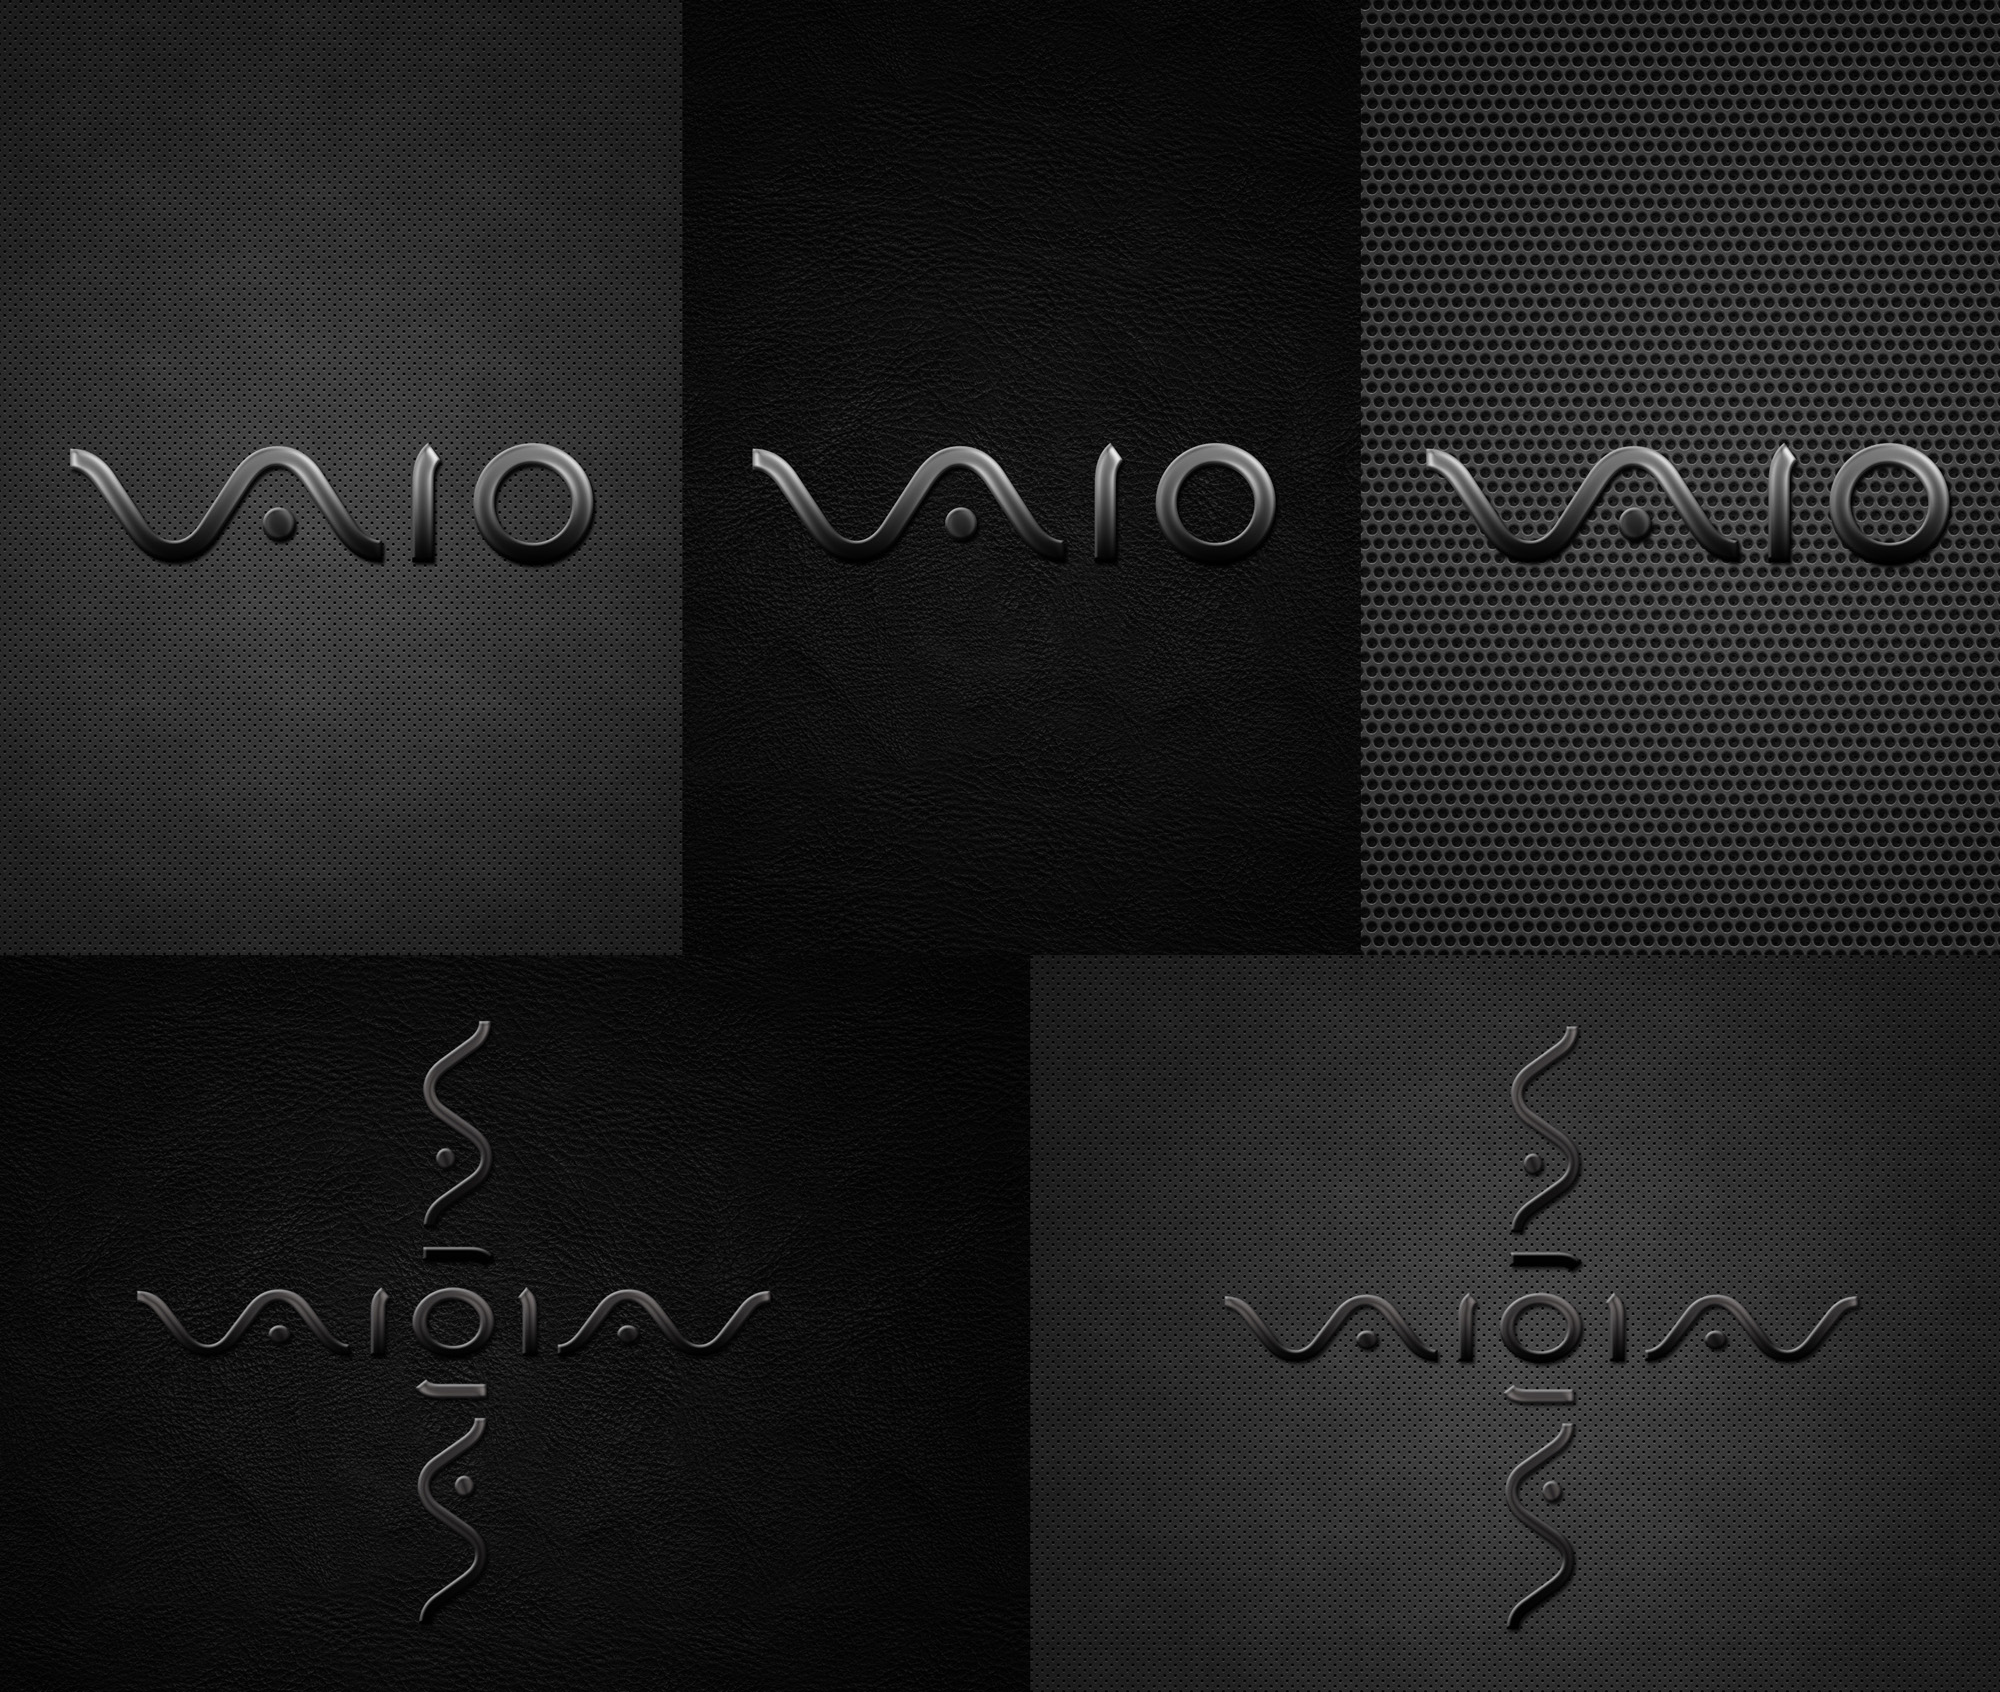 Sony Vaio Dark Wallpapers By Bhutoria19 On Deviantart